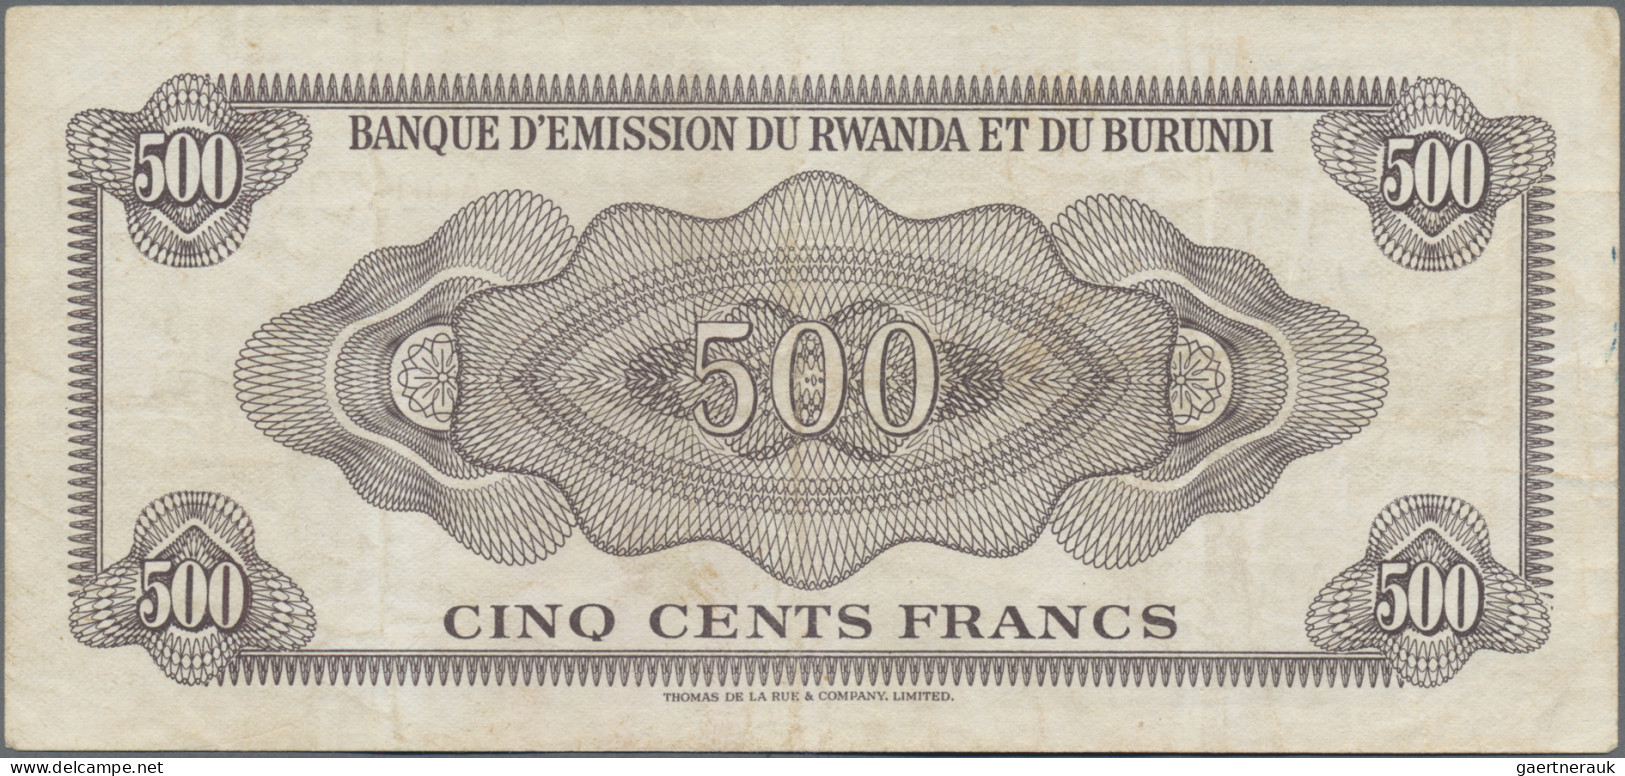 Rwanda-Burundi: Banque D'Émission Du Rwanda Et Du Burundi, 500 Francs 1960, P.6a - Ruanda-Burundi